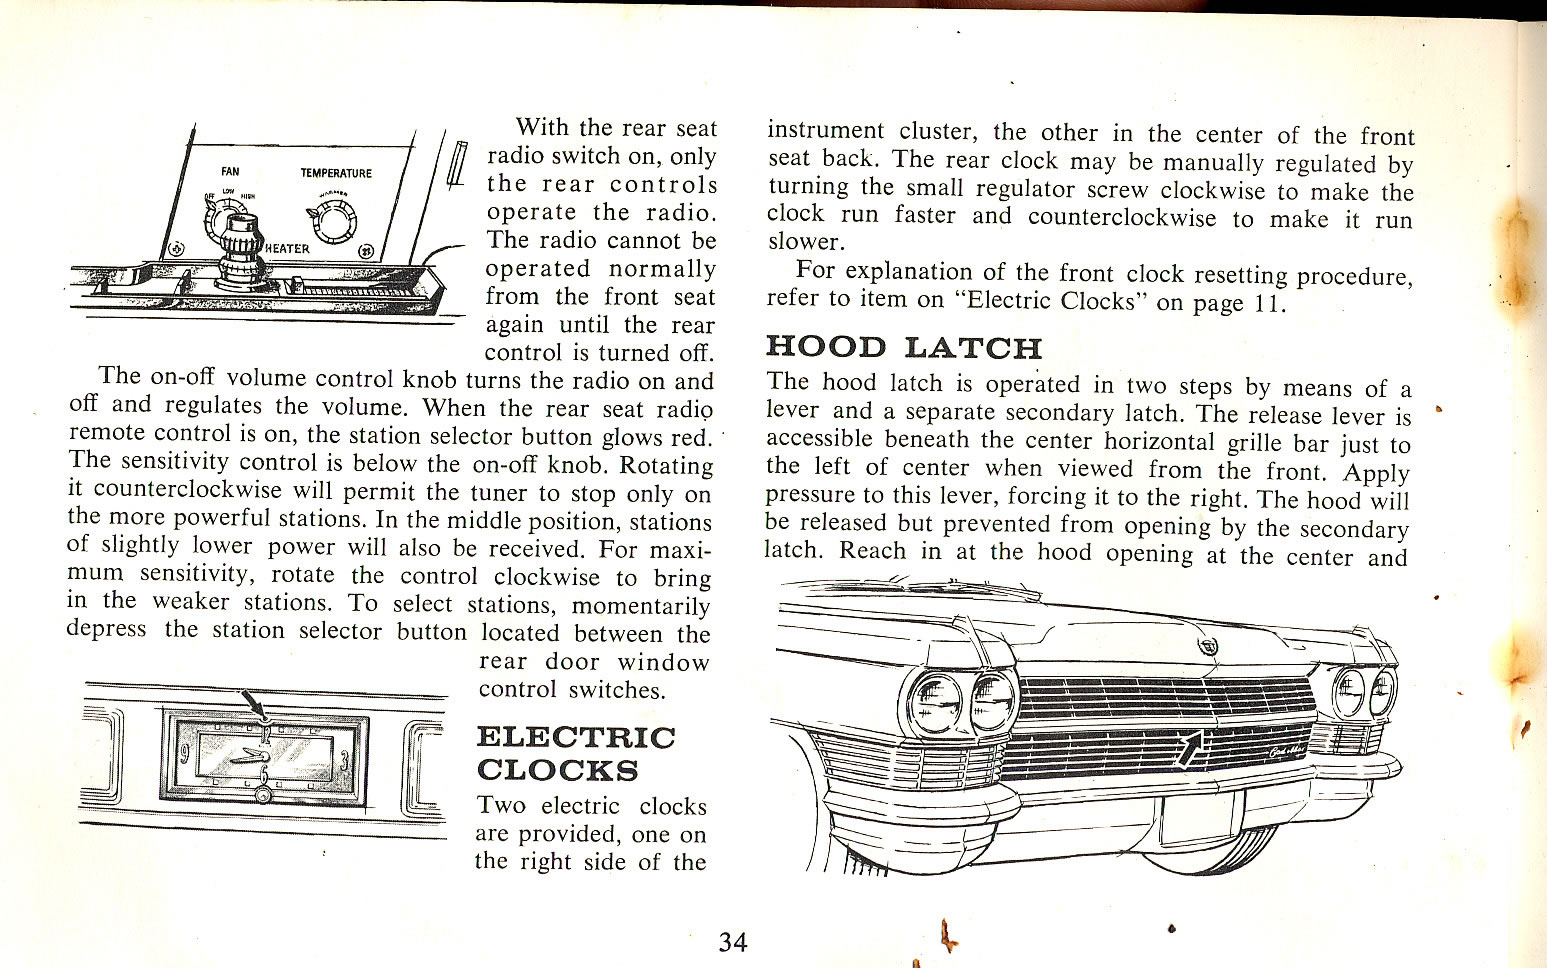 1965 Cadillac Manual-34